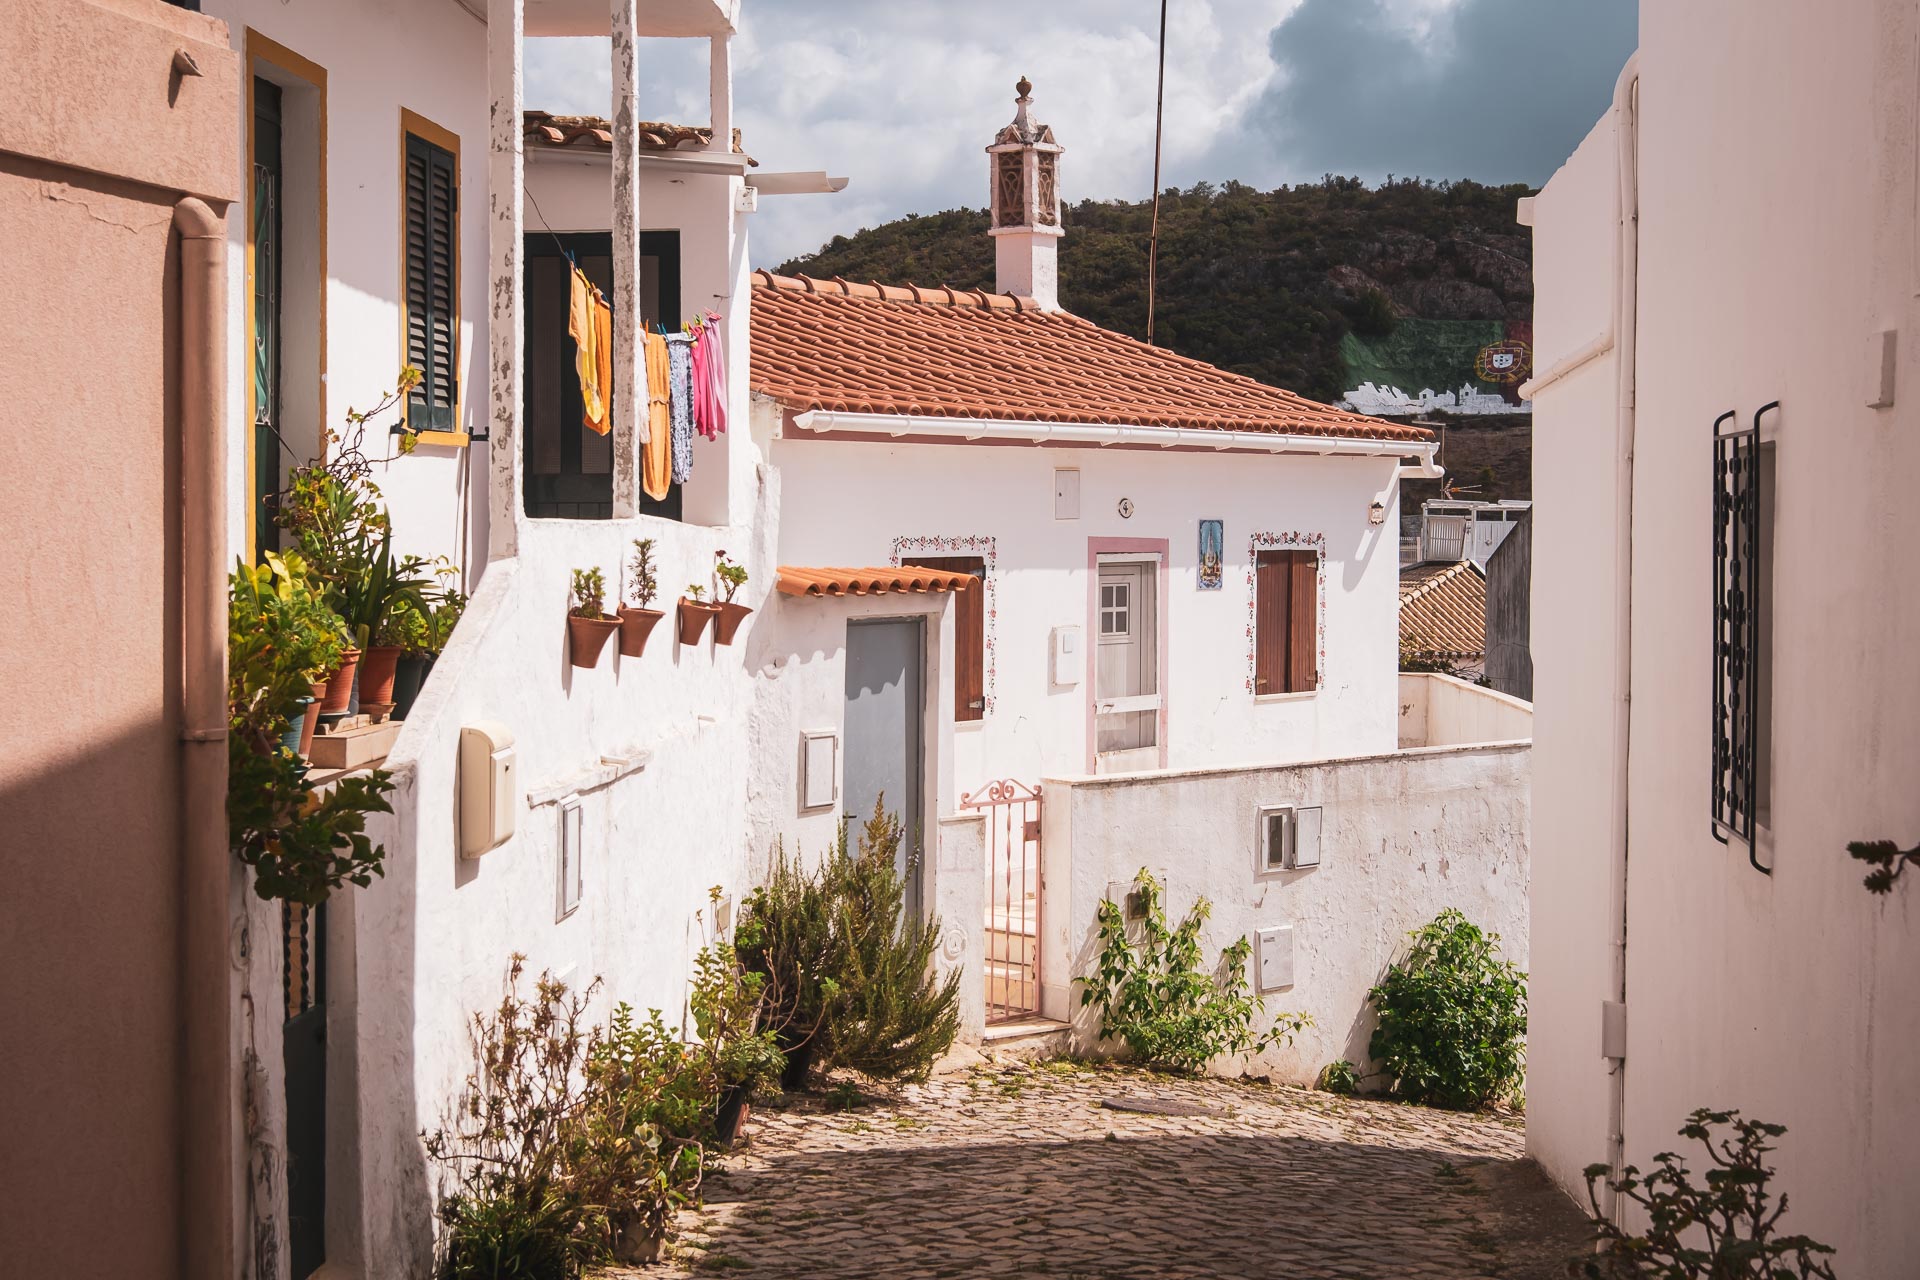 Alte – det genuina Algarve